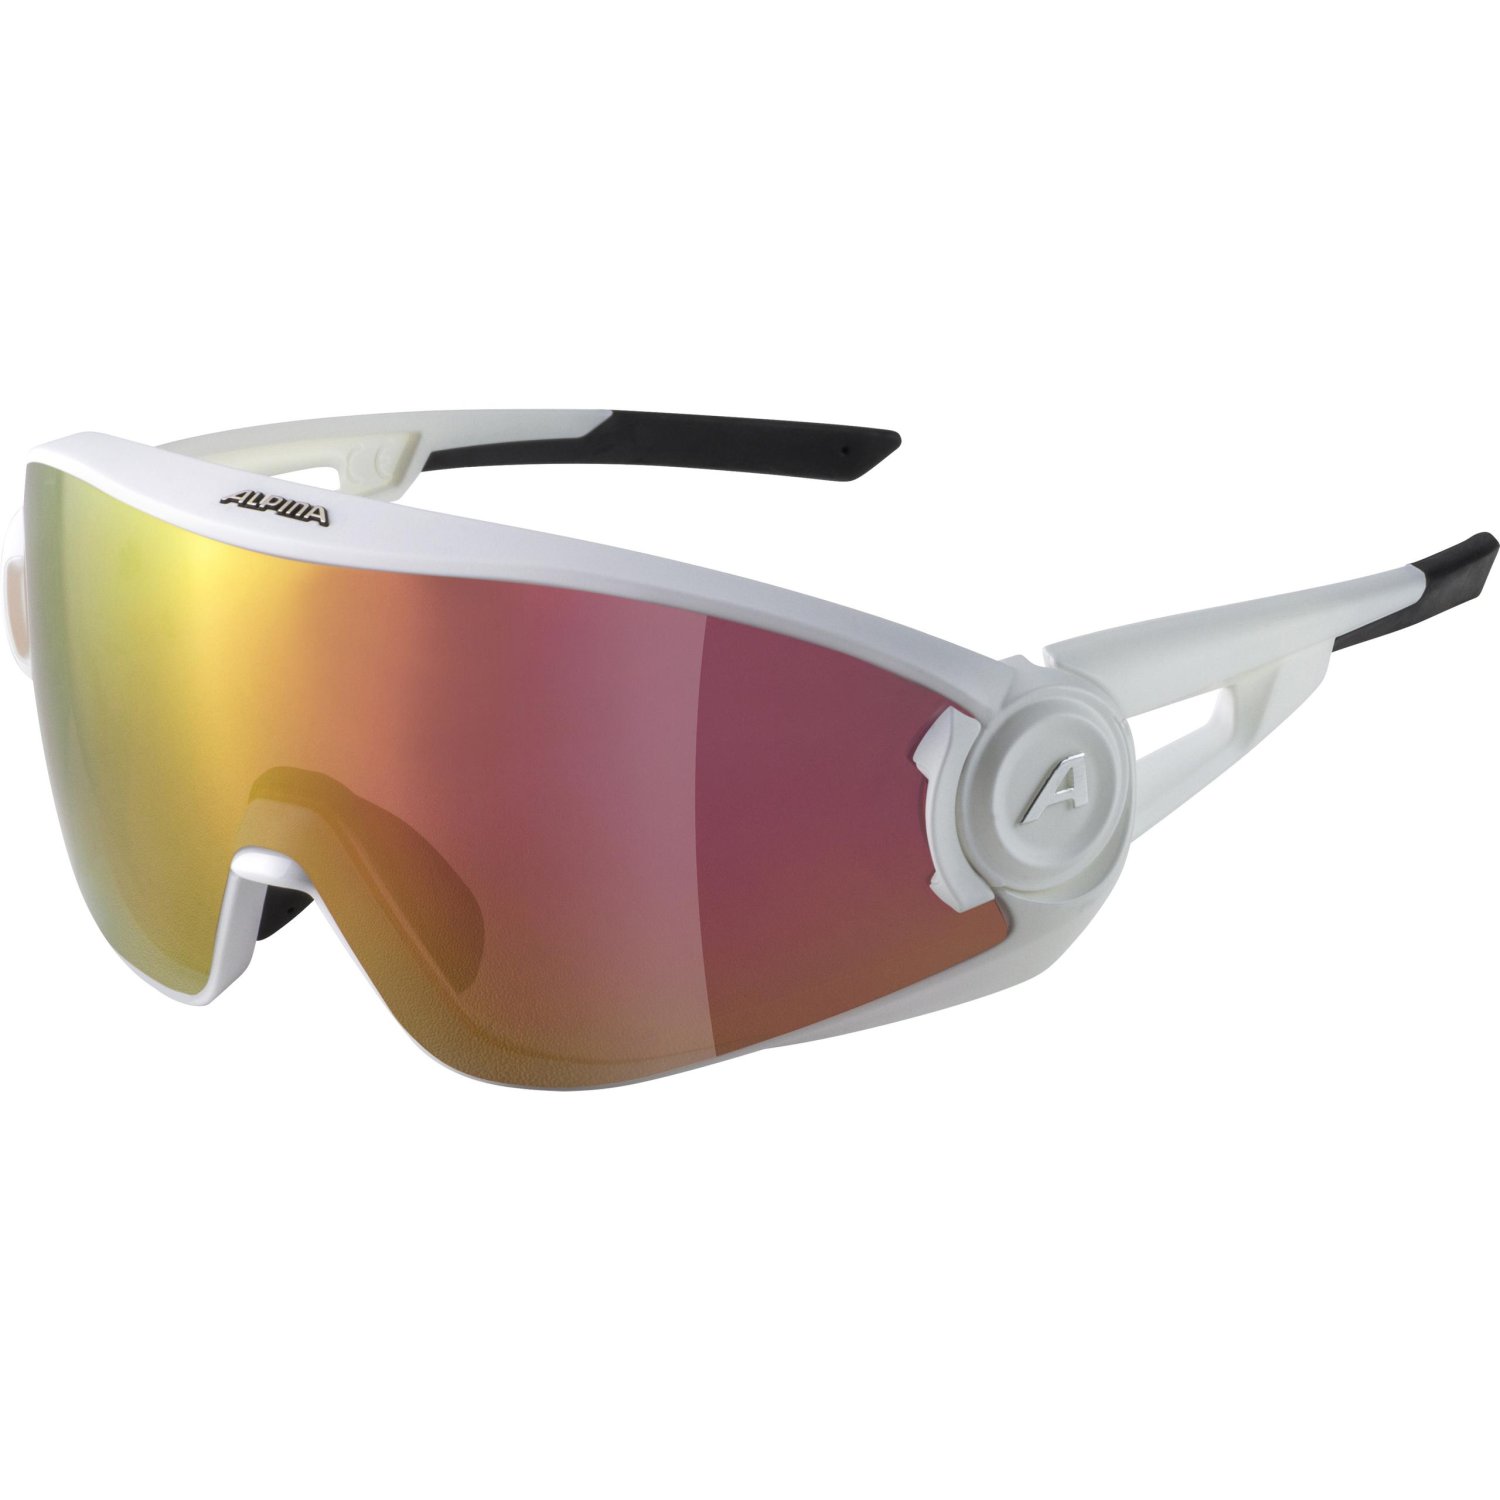 Очки велосипедные Alpina 5W1NG Q+VM, солнцезащитные, White Matt/Red Mirror, 2021, A8653510 очки для плавания arena cobra ultra swipe mirror 002507310 зеркальные